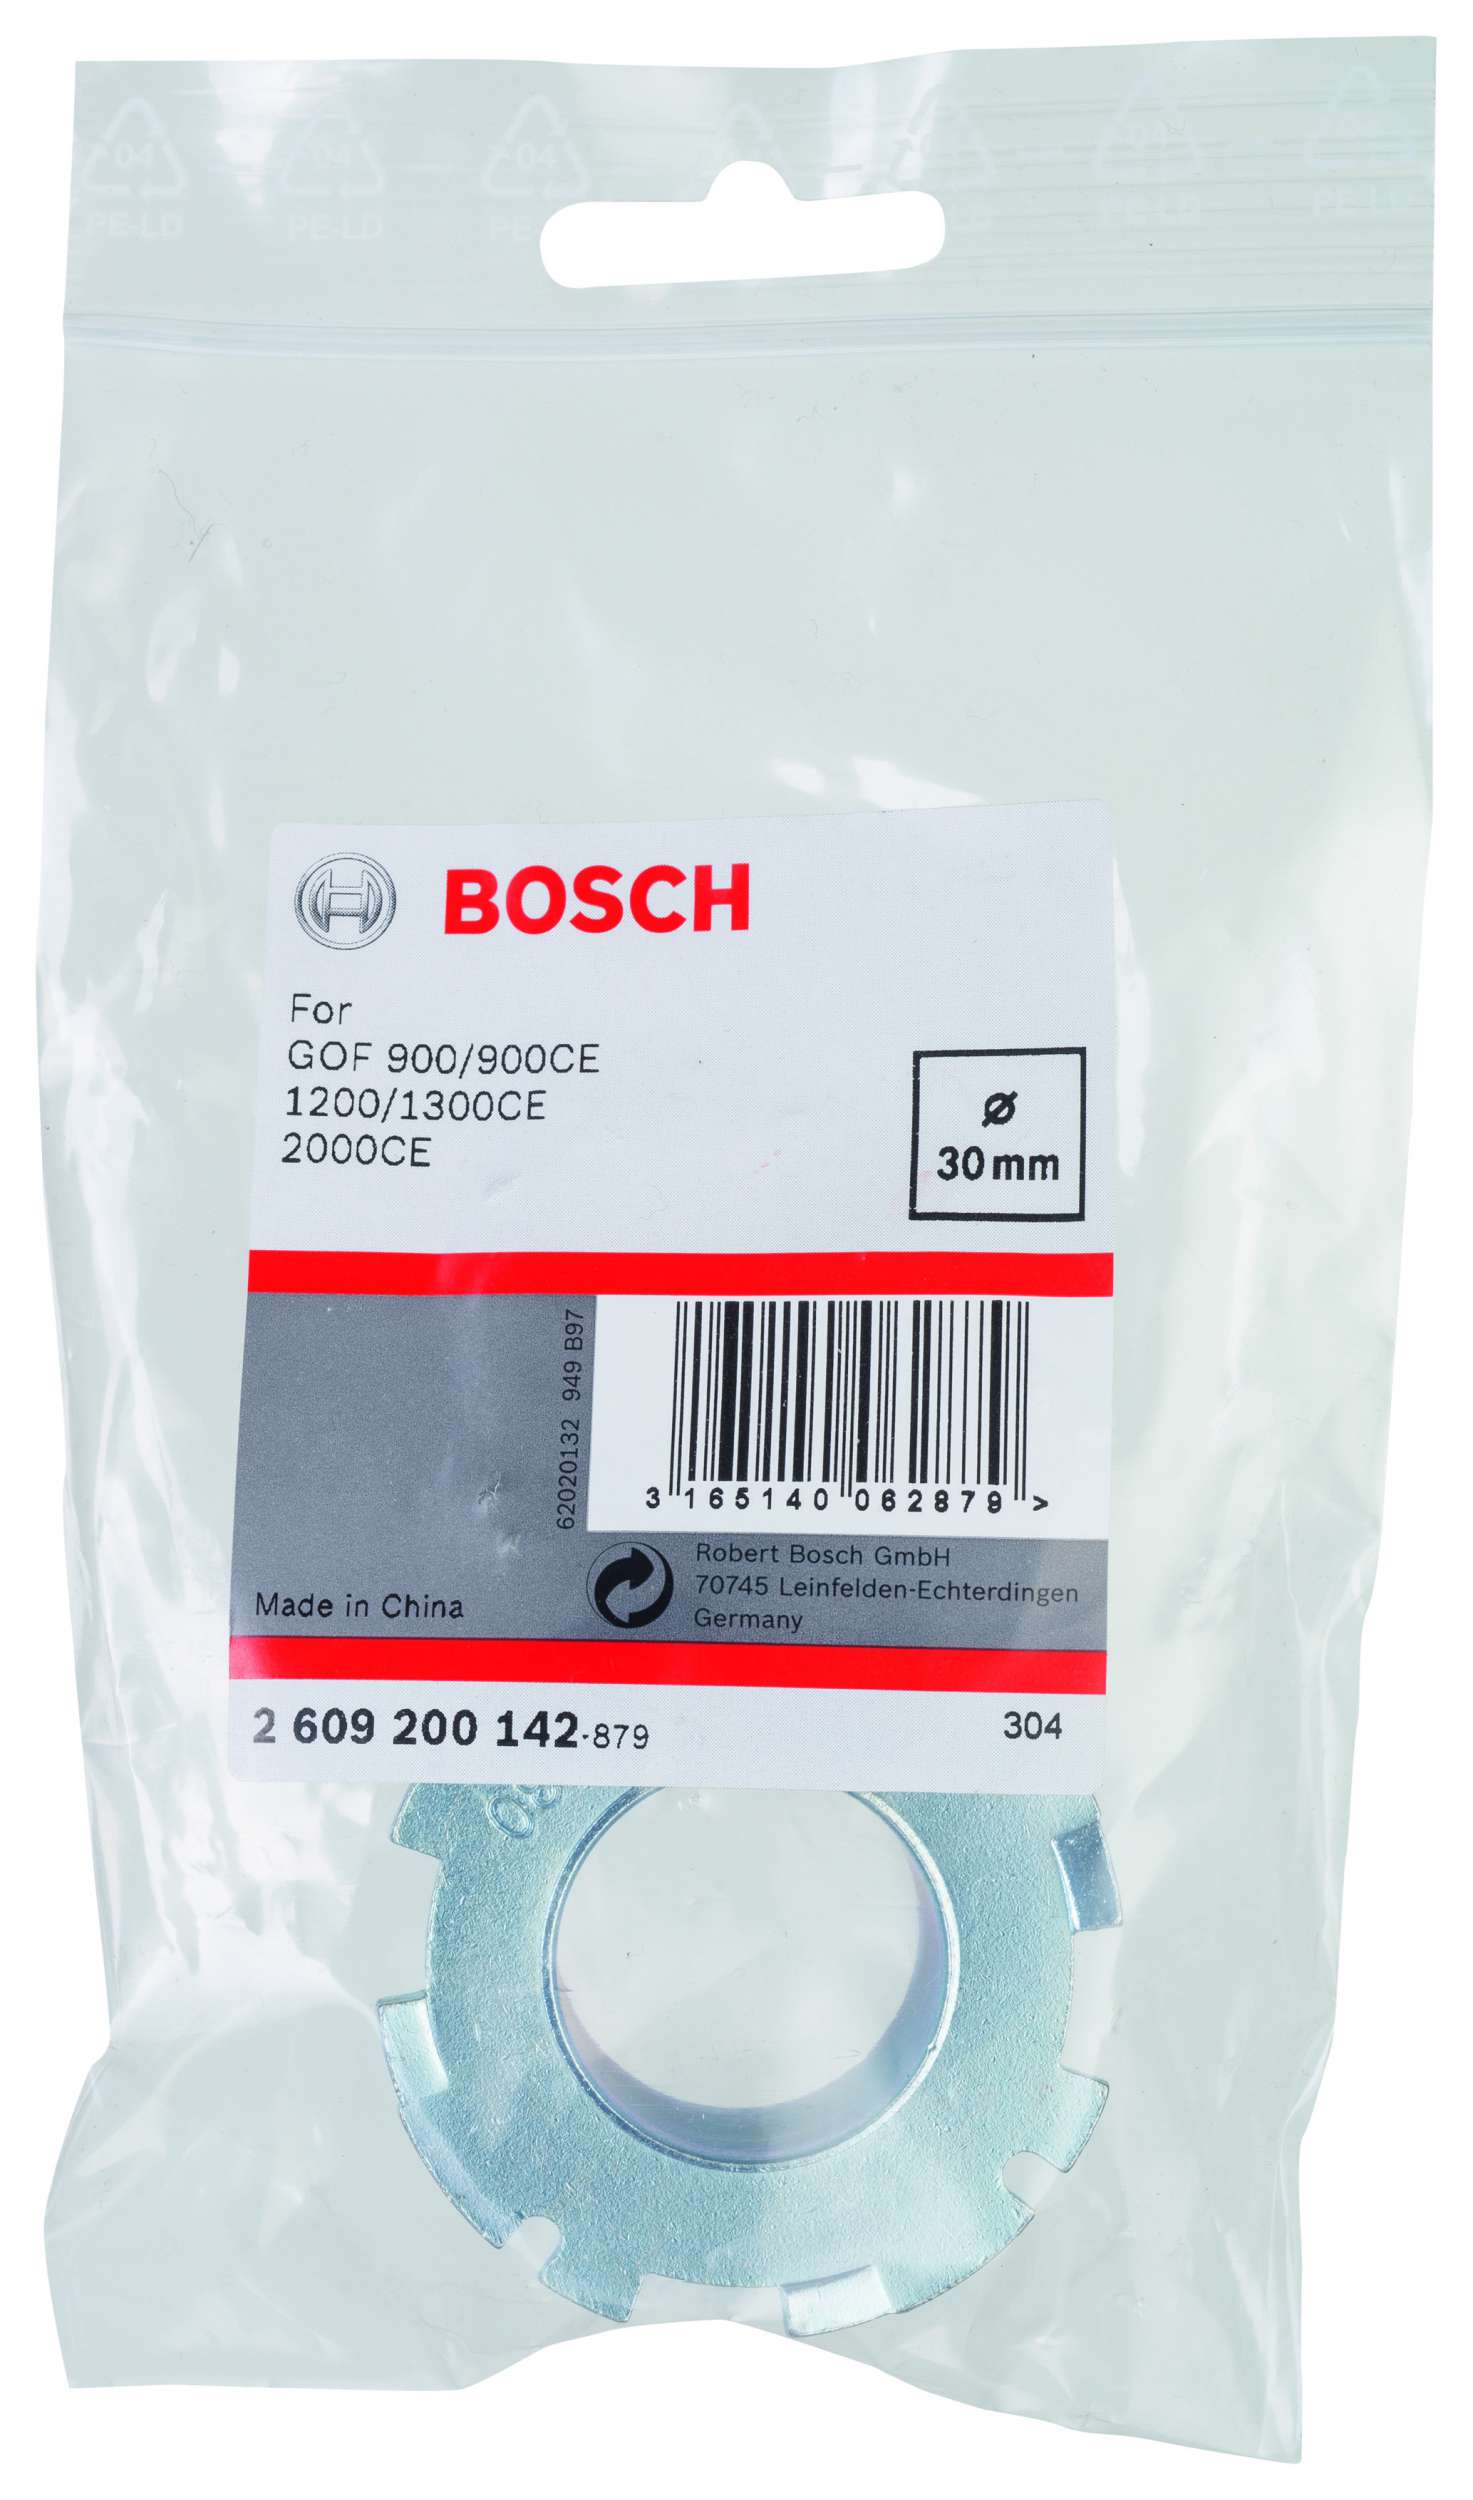 Bosch - Freze Kopyalama Sablonu 30 mm